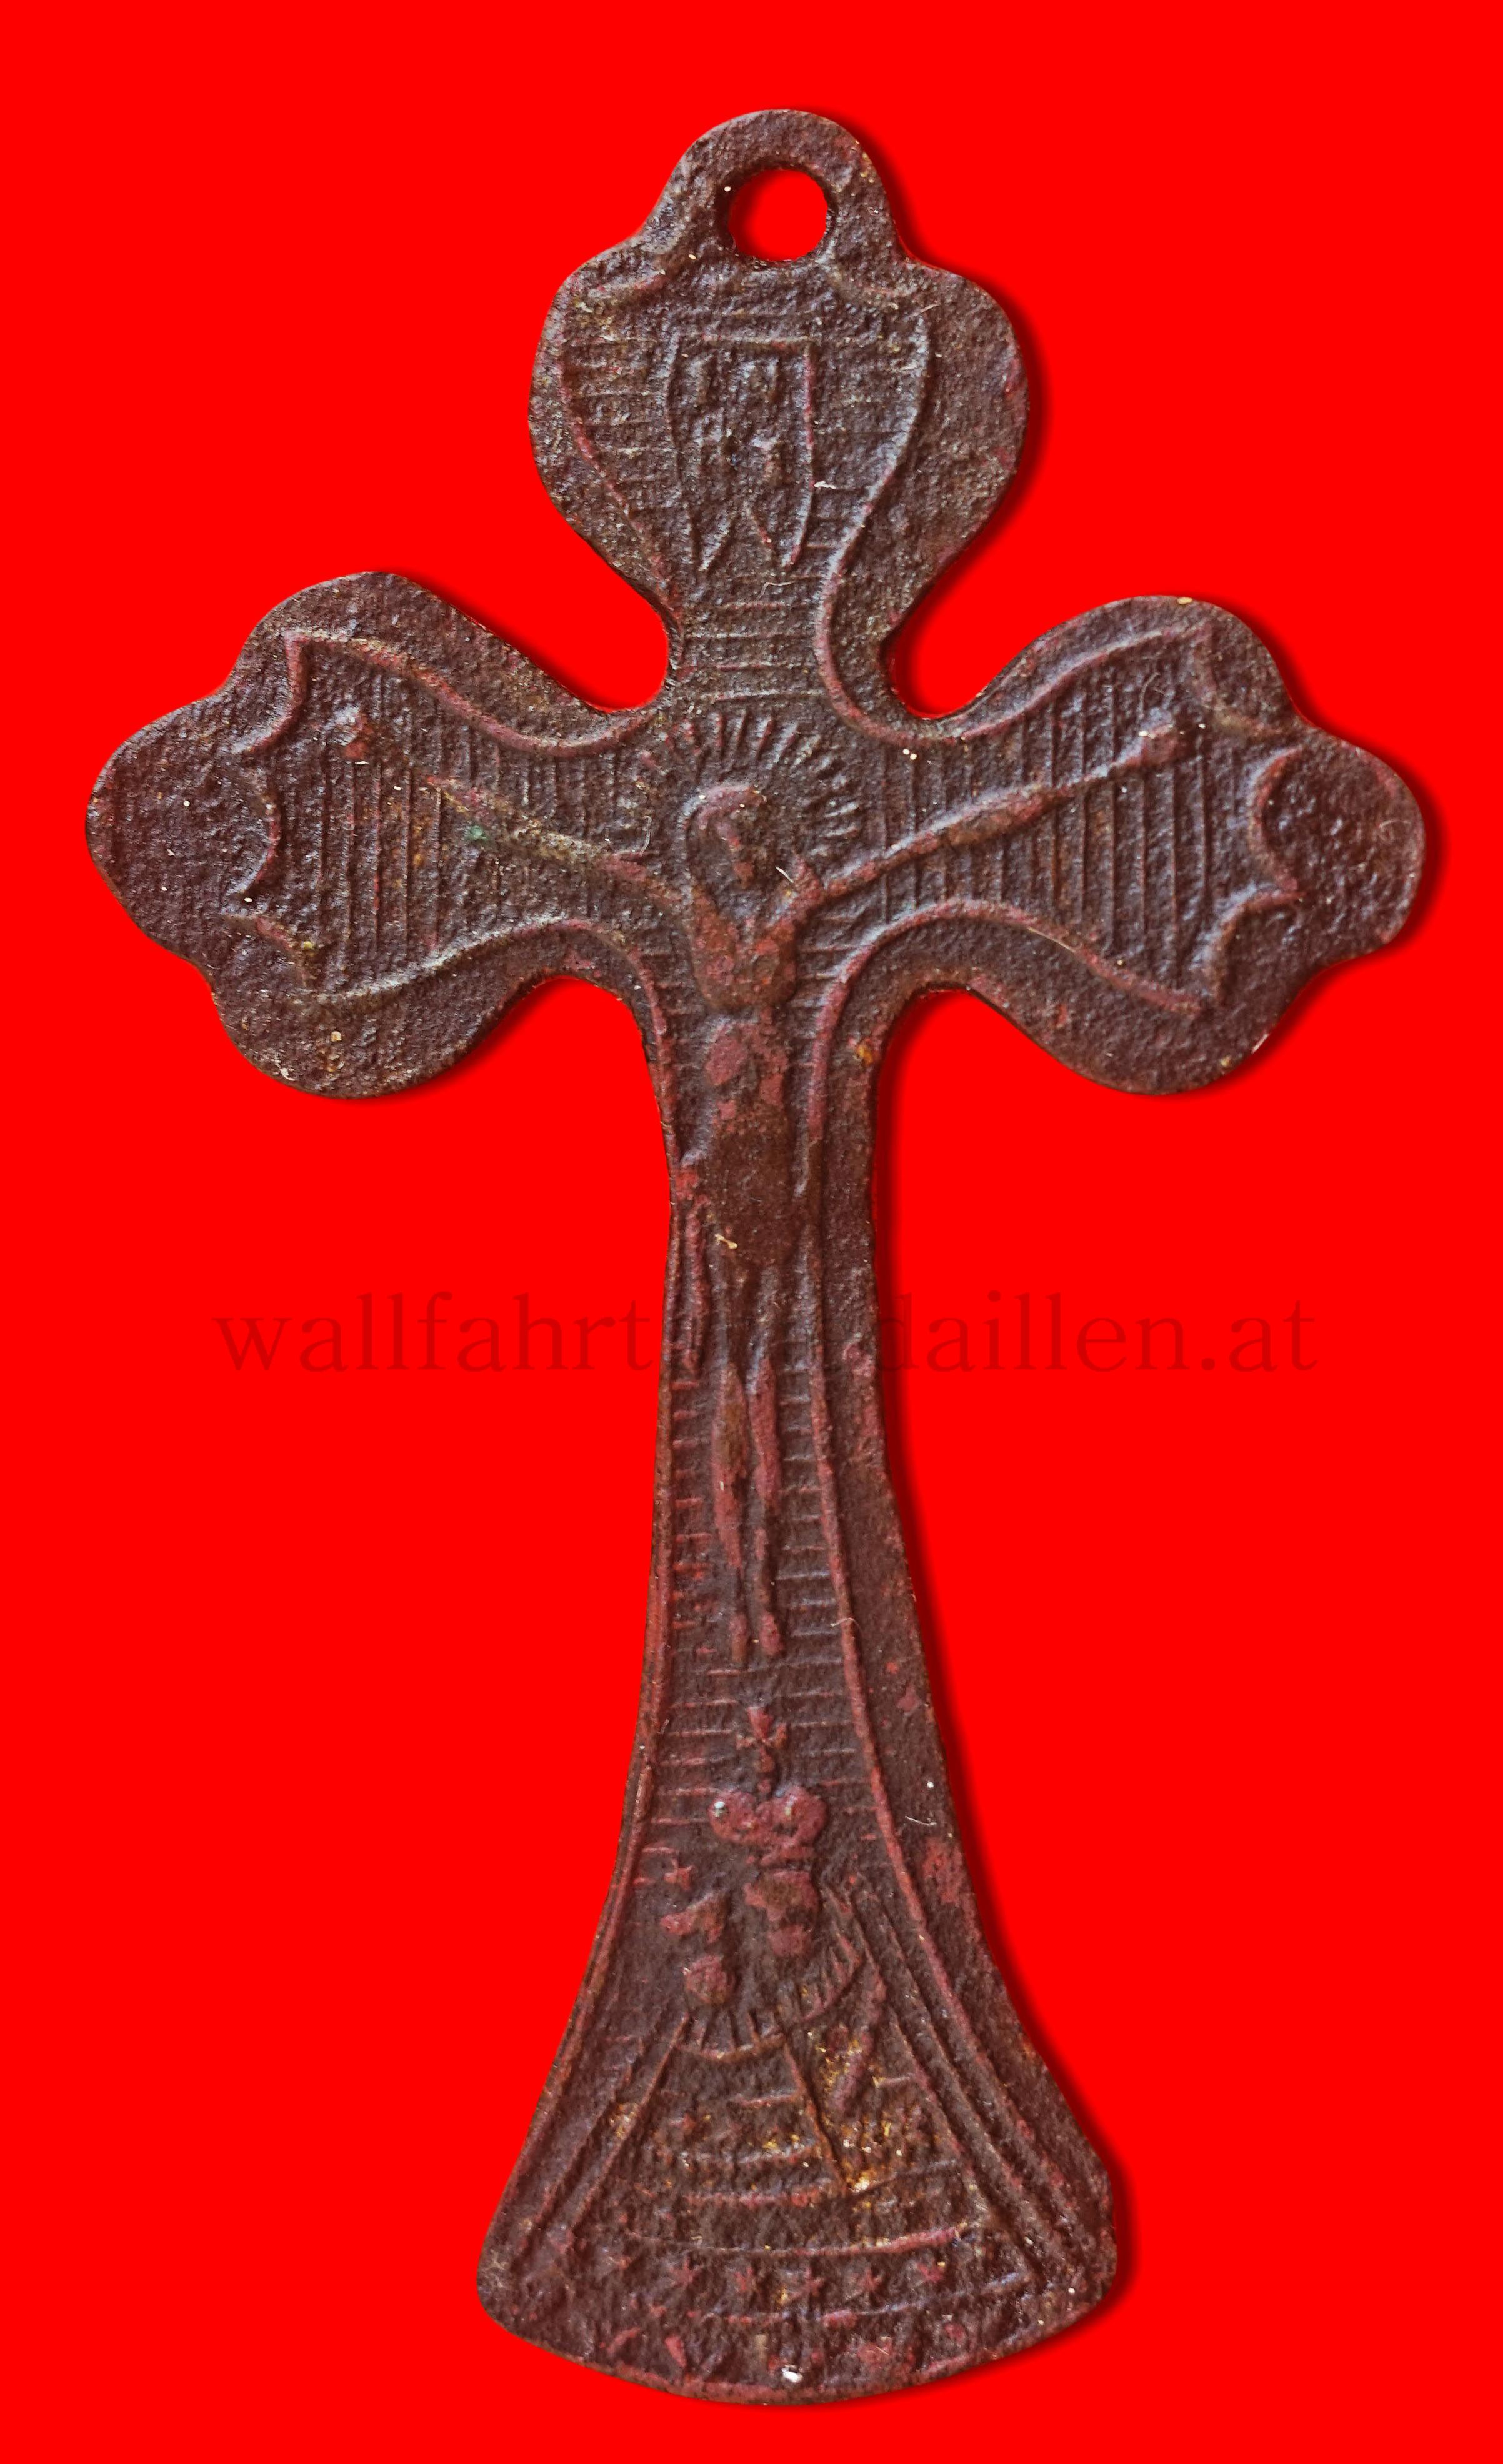   Wallfahrtskreuz aus Maria Zell  (Unter dem Gekreuzigten ist noch leicht das Gnadenbild von Maria Zell zu erkennen)  frühes XIX Jhd